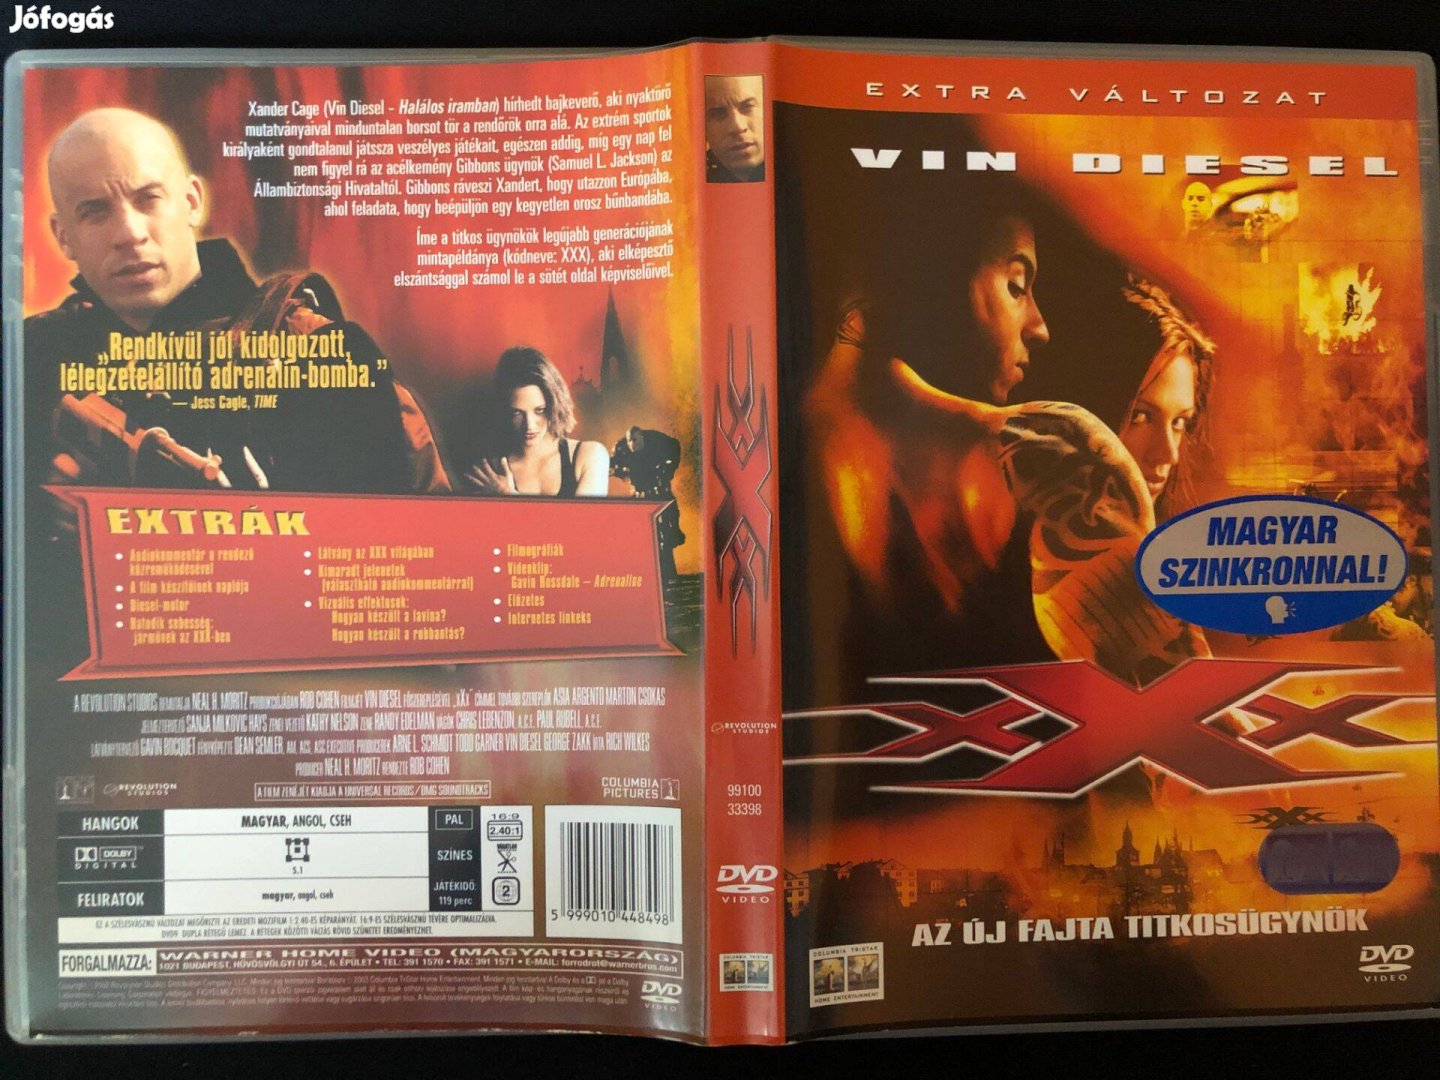 XXX - (Tripla X) (karcmentes, extra változat, Vin Diesel) DVD